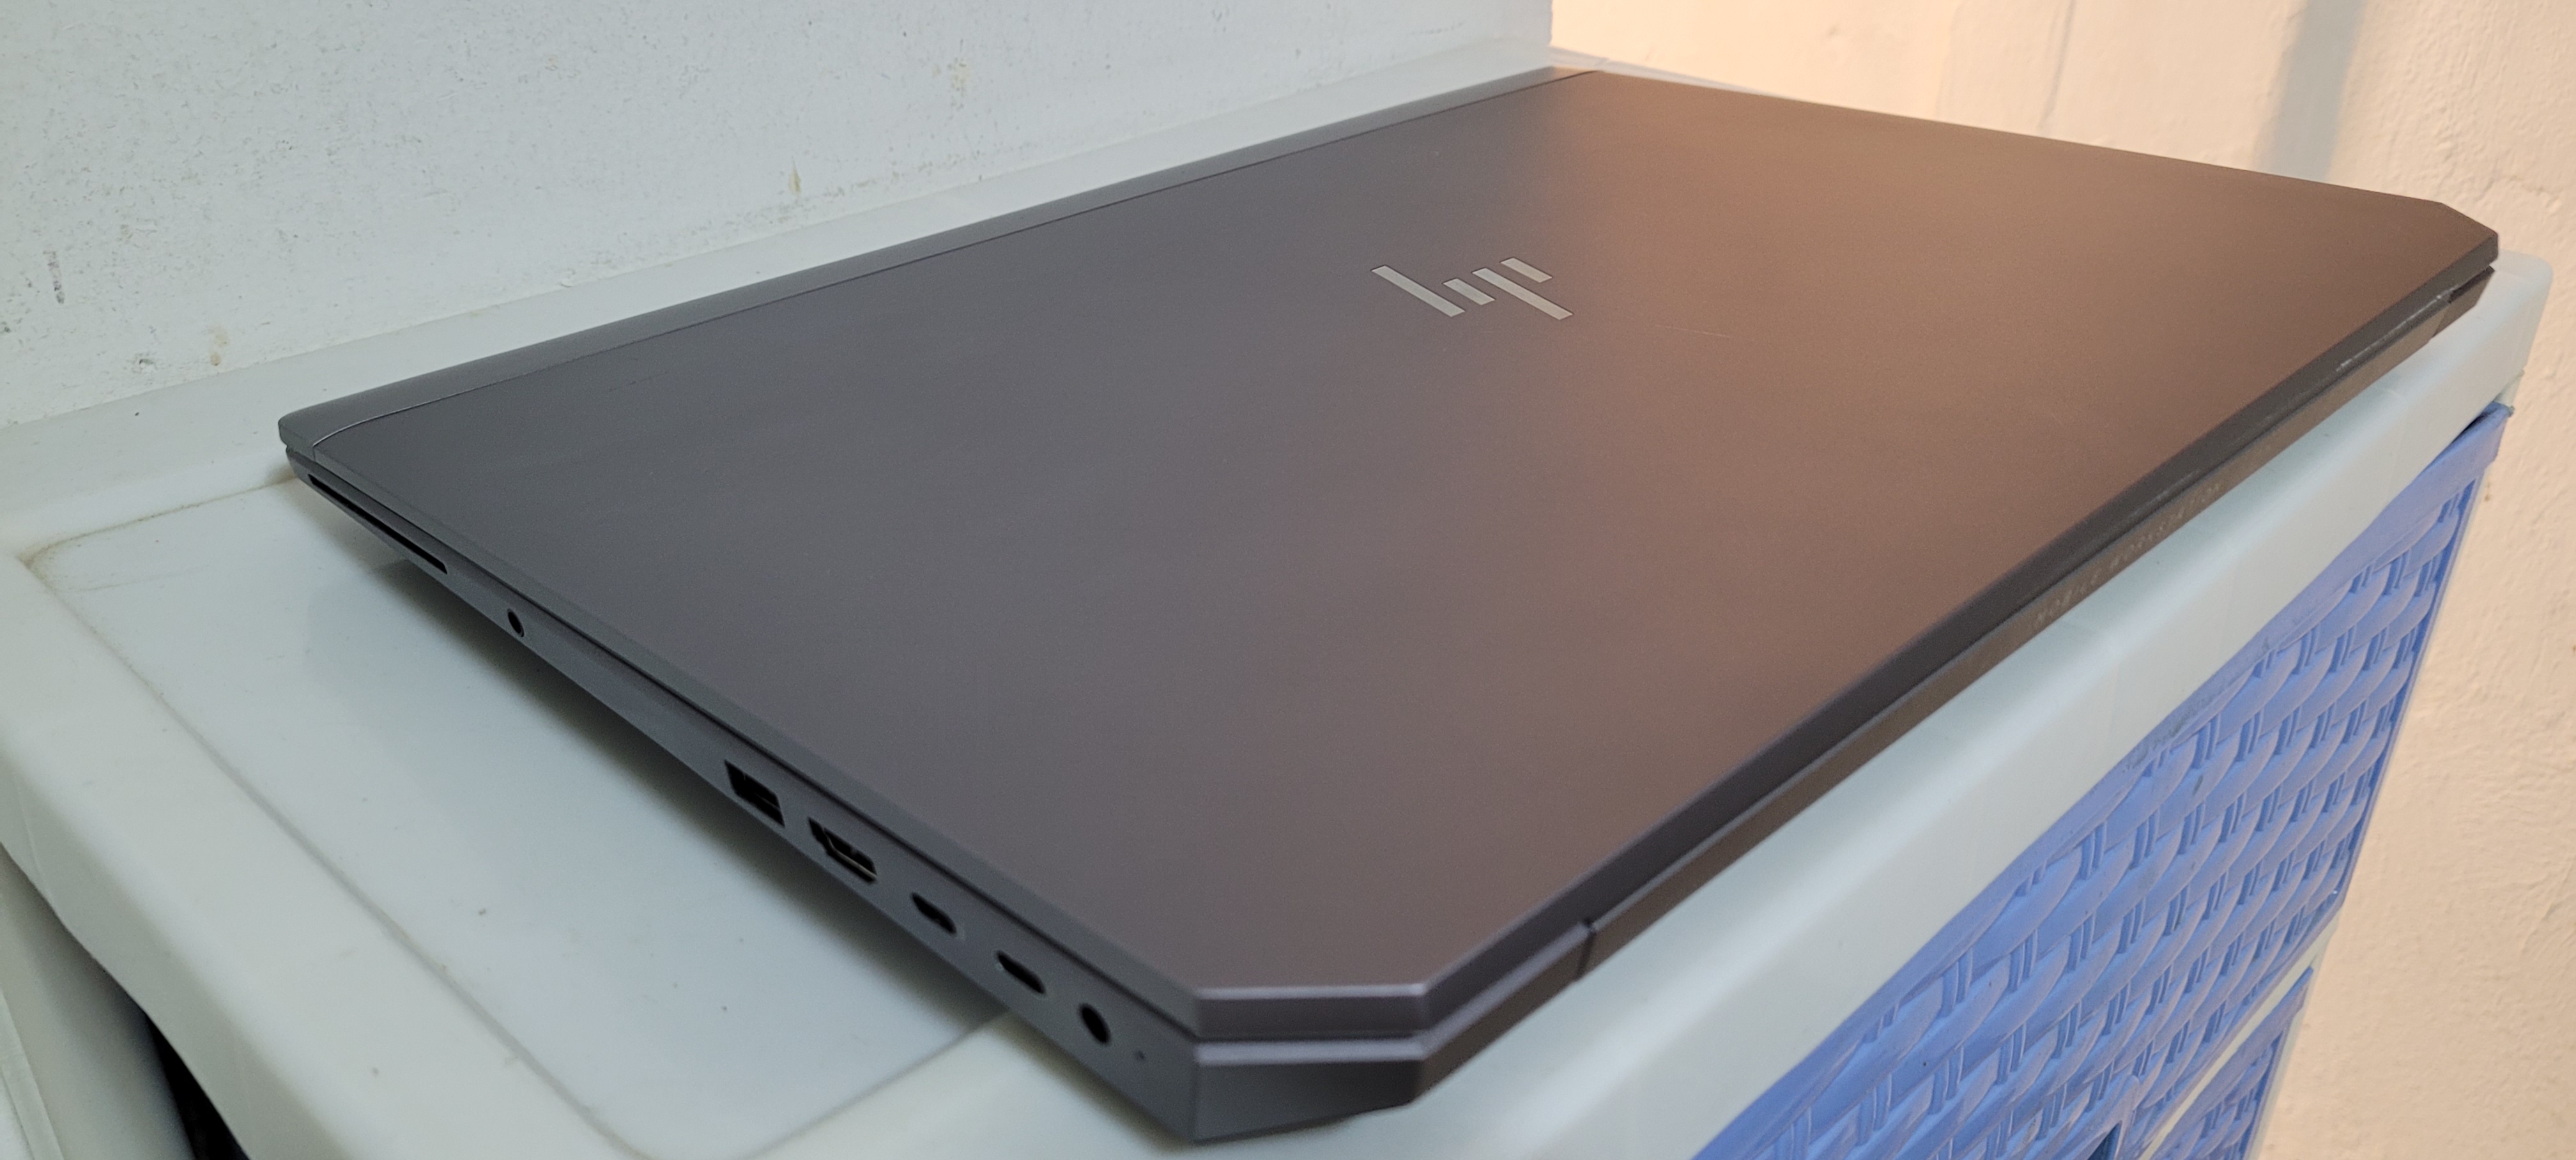 computadoras y laptops - laptop hp Zbook 17 Pulg Core i7 8va Ram 24gb ddr4 Disco 1tb Nvidea 16gb 3